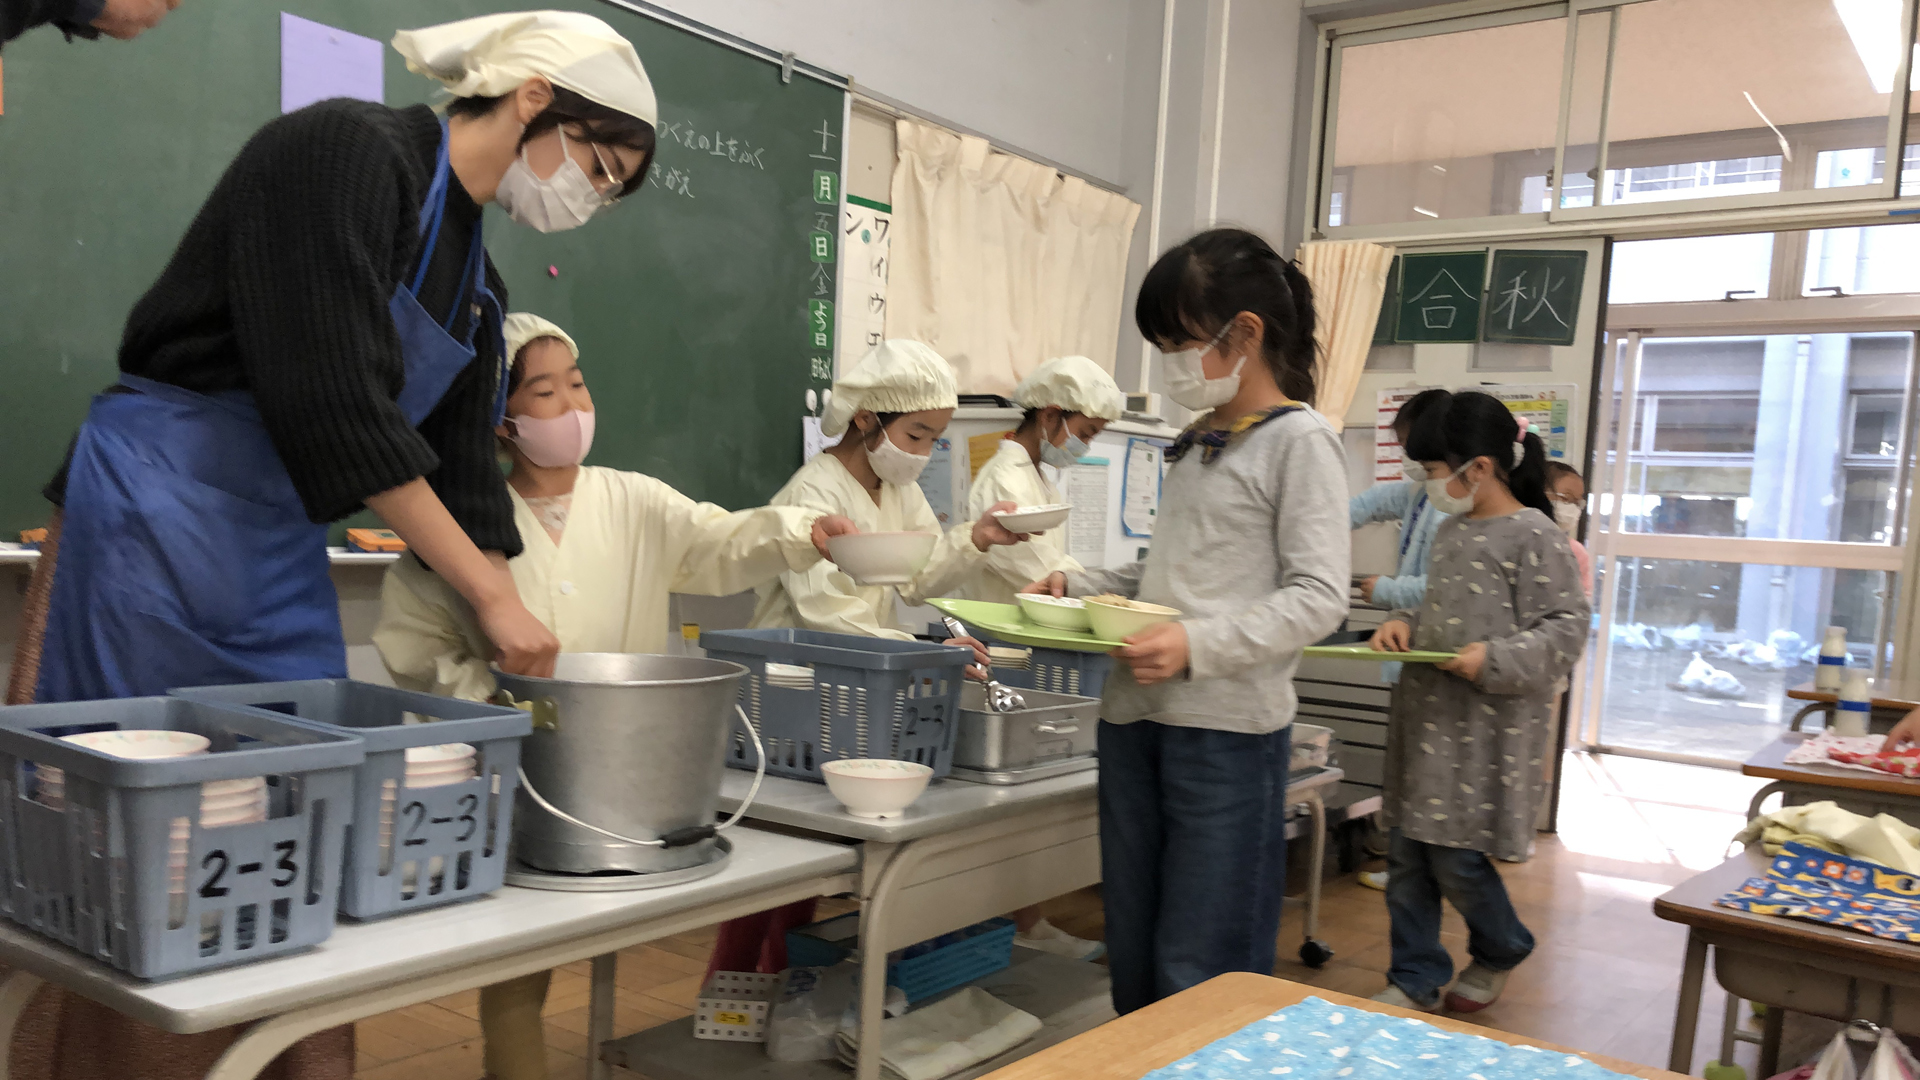 Kinder in einer japanischen Schulkantine beim Küchendienst